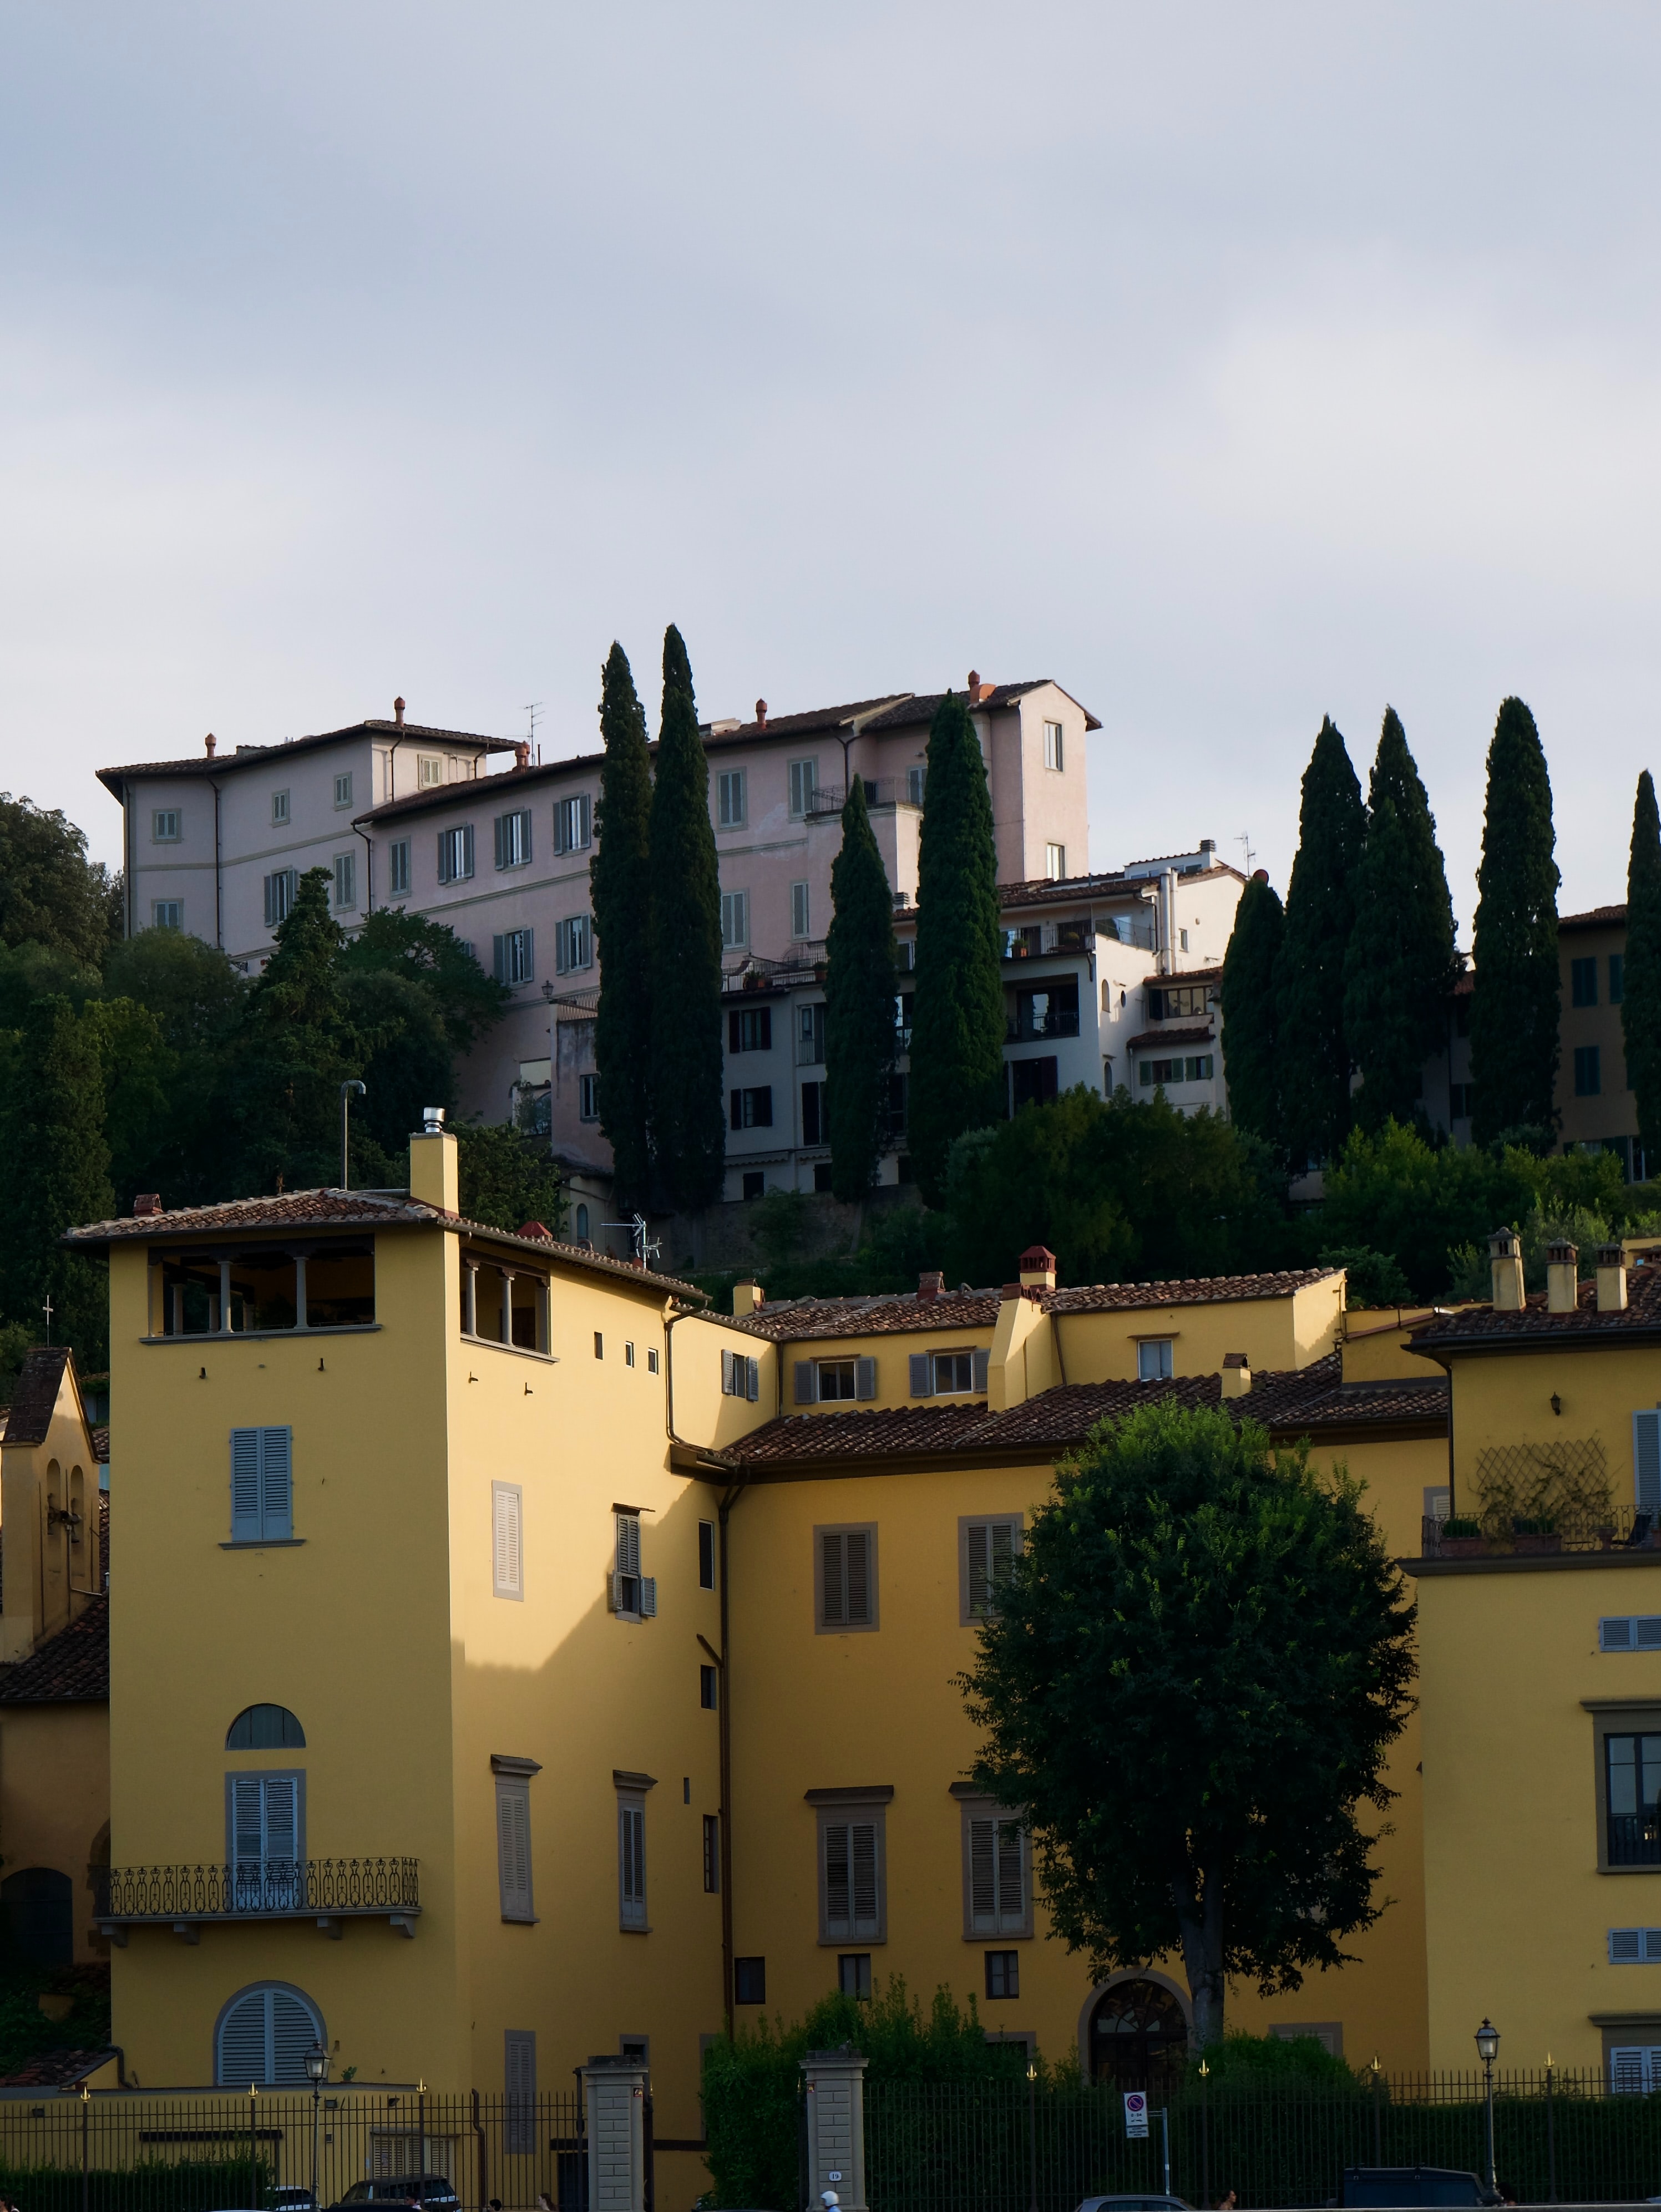 Affitti a Firenze: i prezzi medi